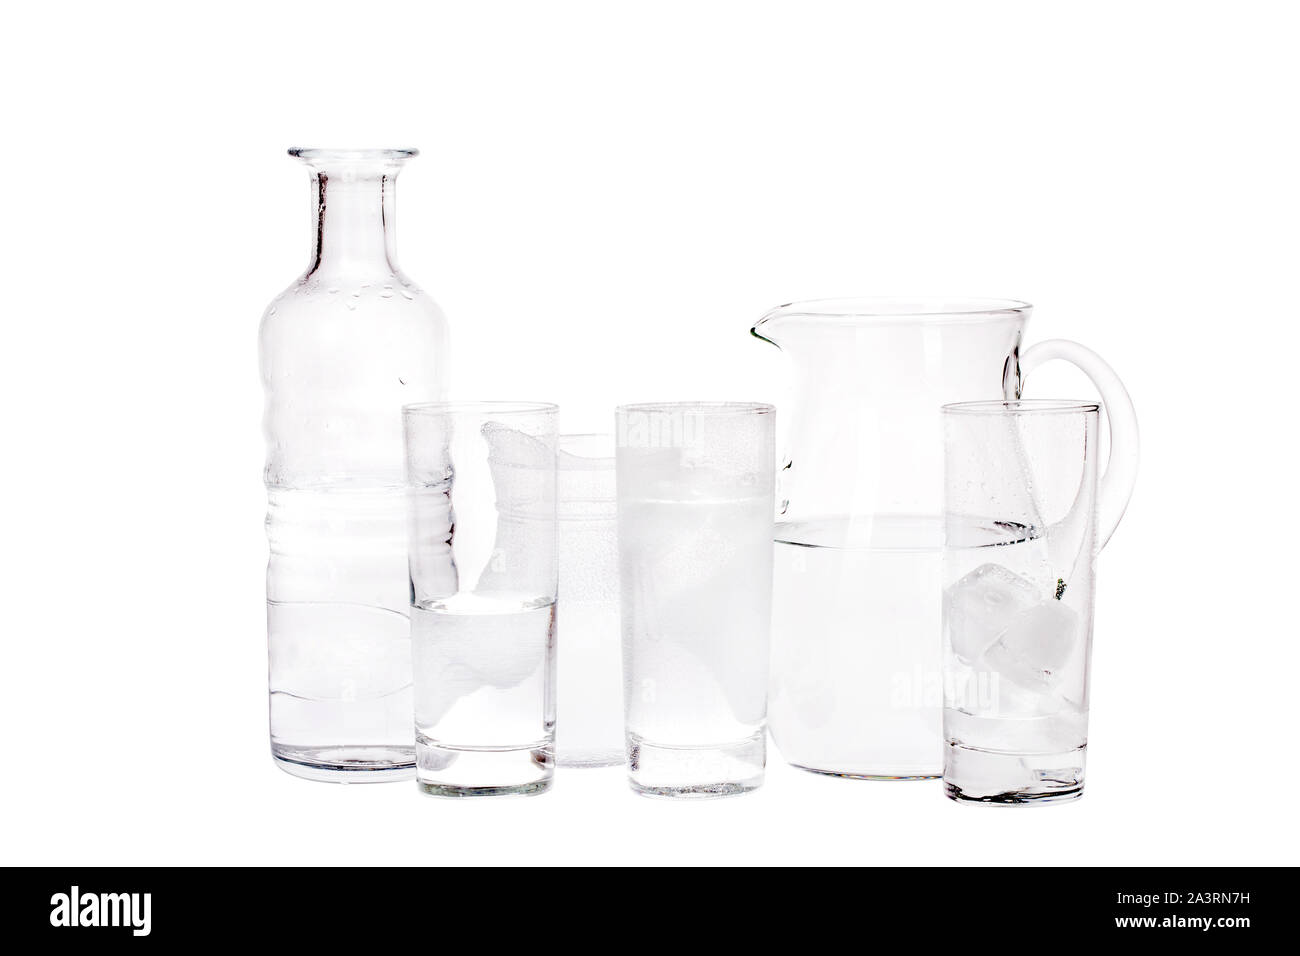 Studio photo de cruche d'eau, bouteille et verres with clipping path Banque D'Images